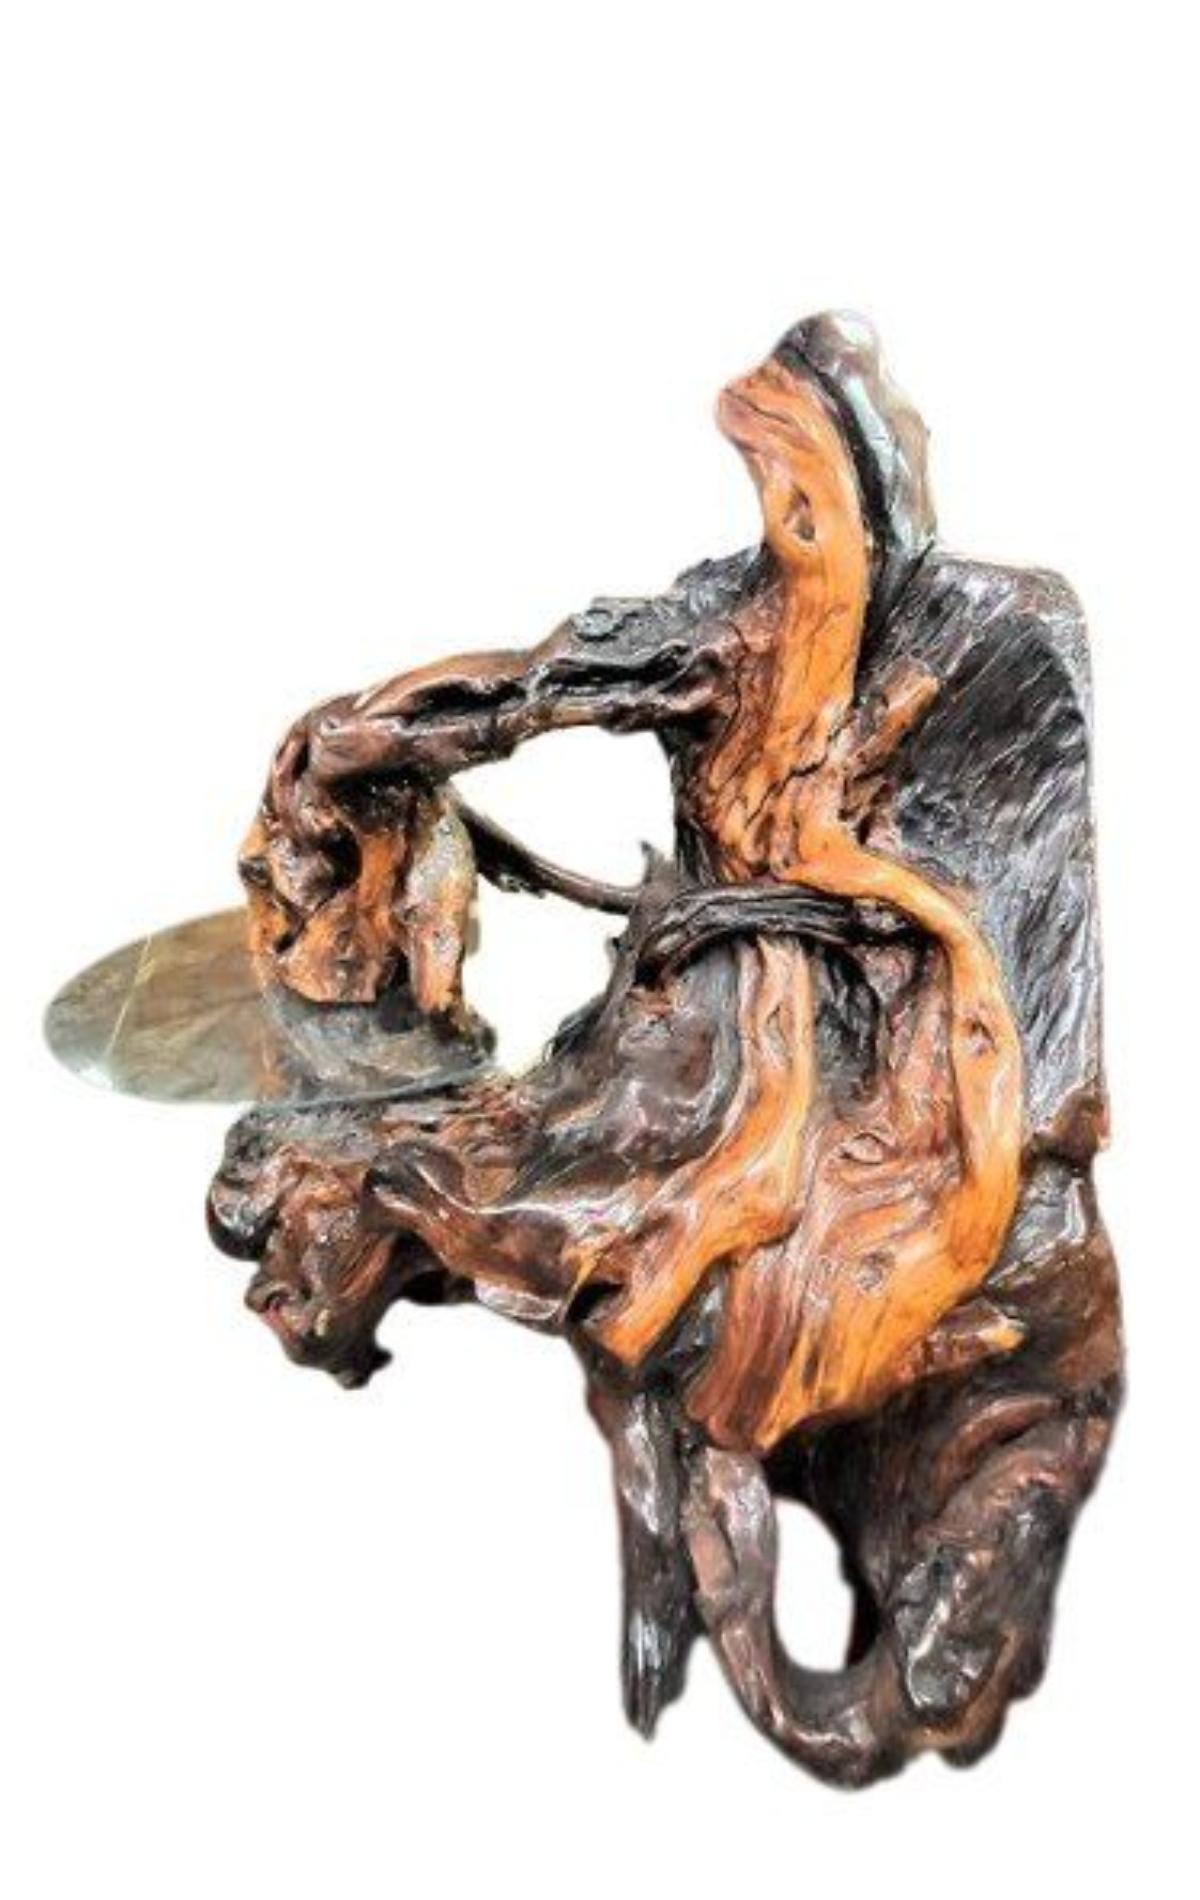 Magnifique sculpture en bois de ronce. L'artiste en a fait une table décorative en y incluant un morceau de verre rond. Pièce rustique intéressante pour votre maison ou votre entreprise.